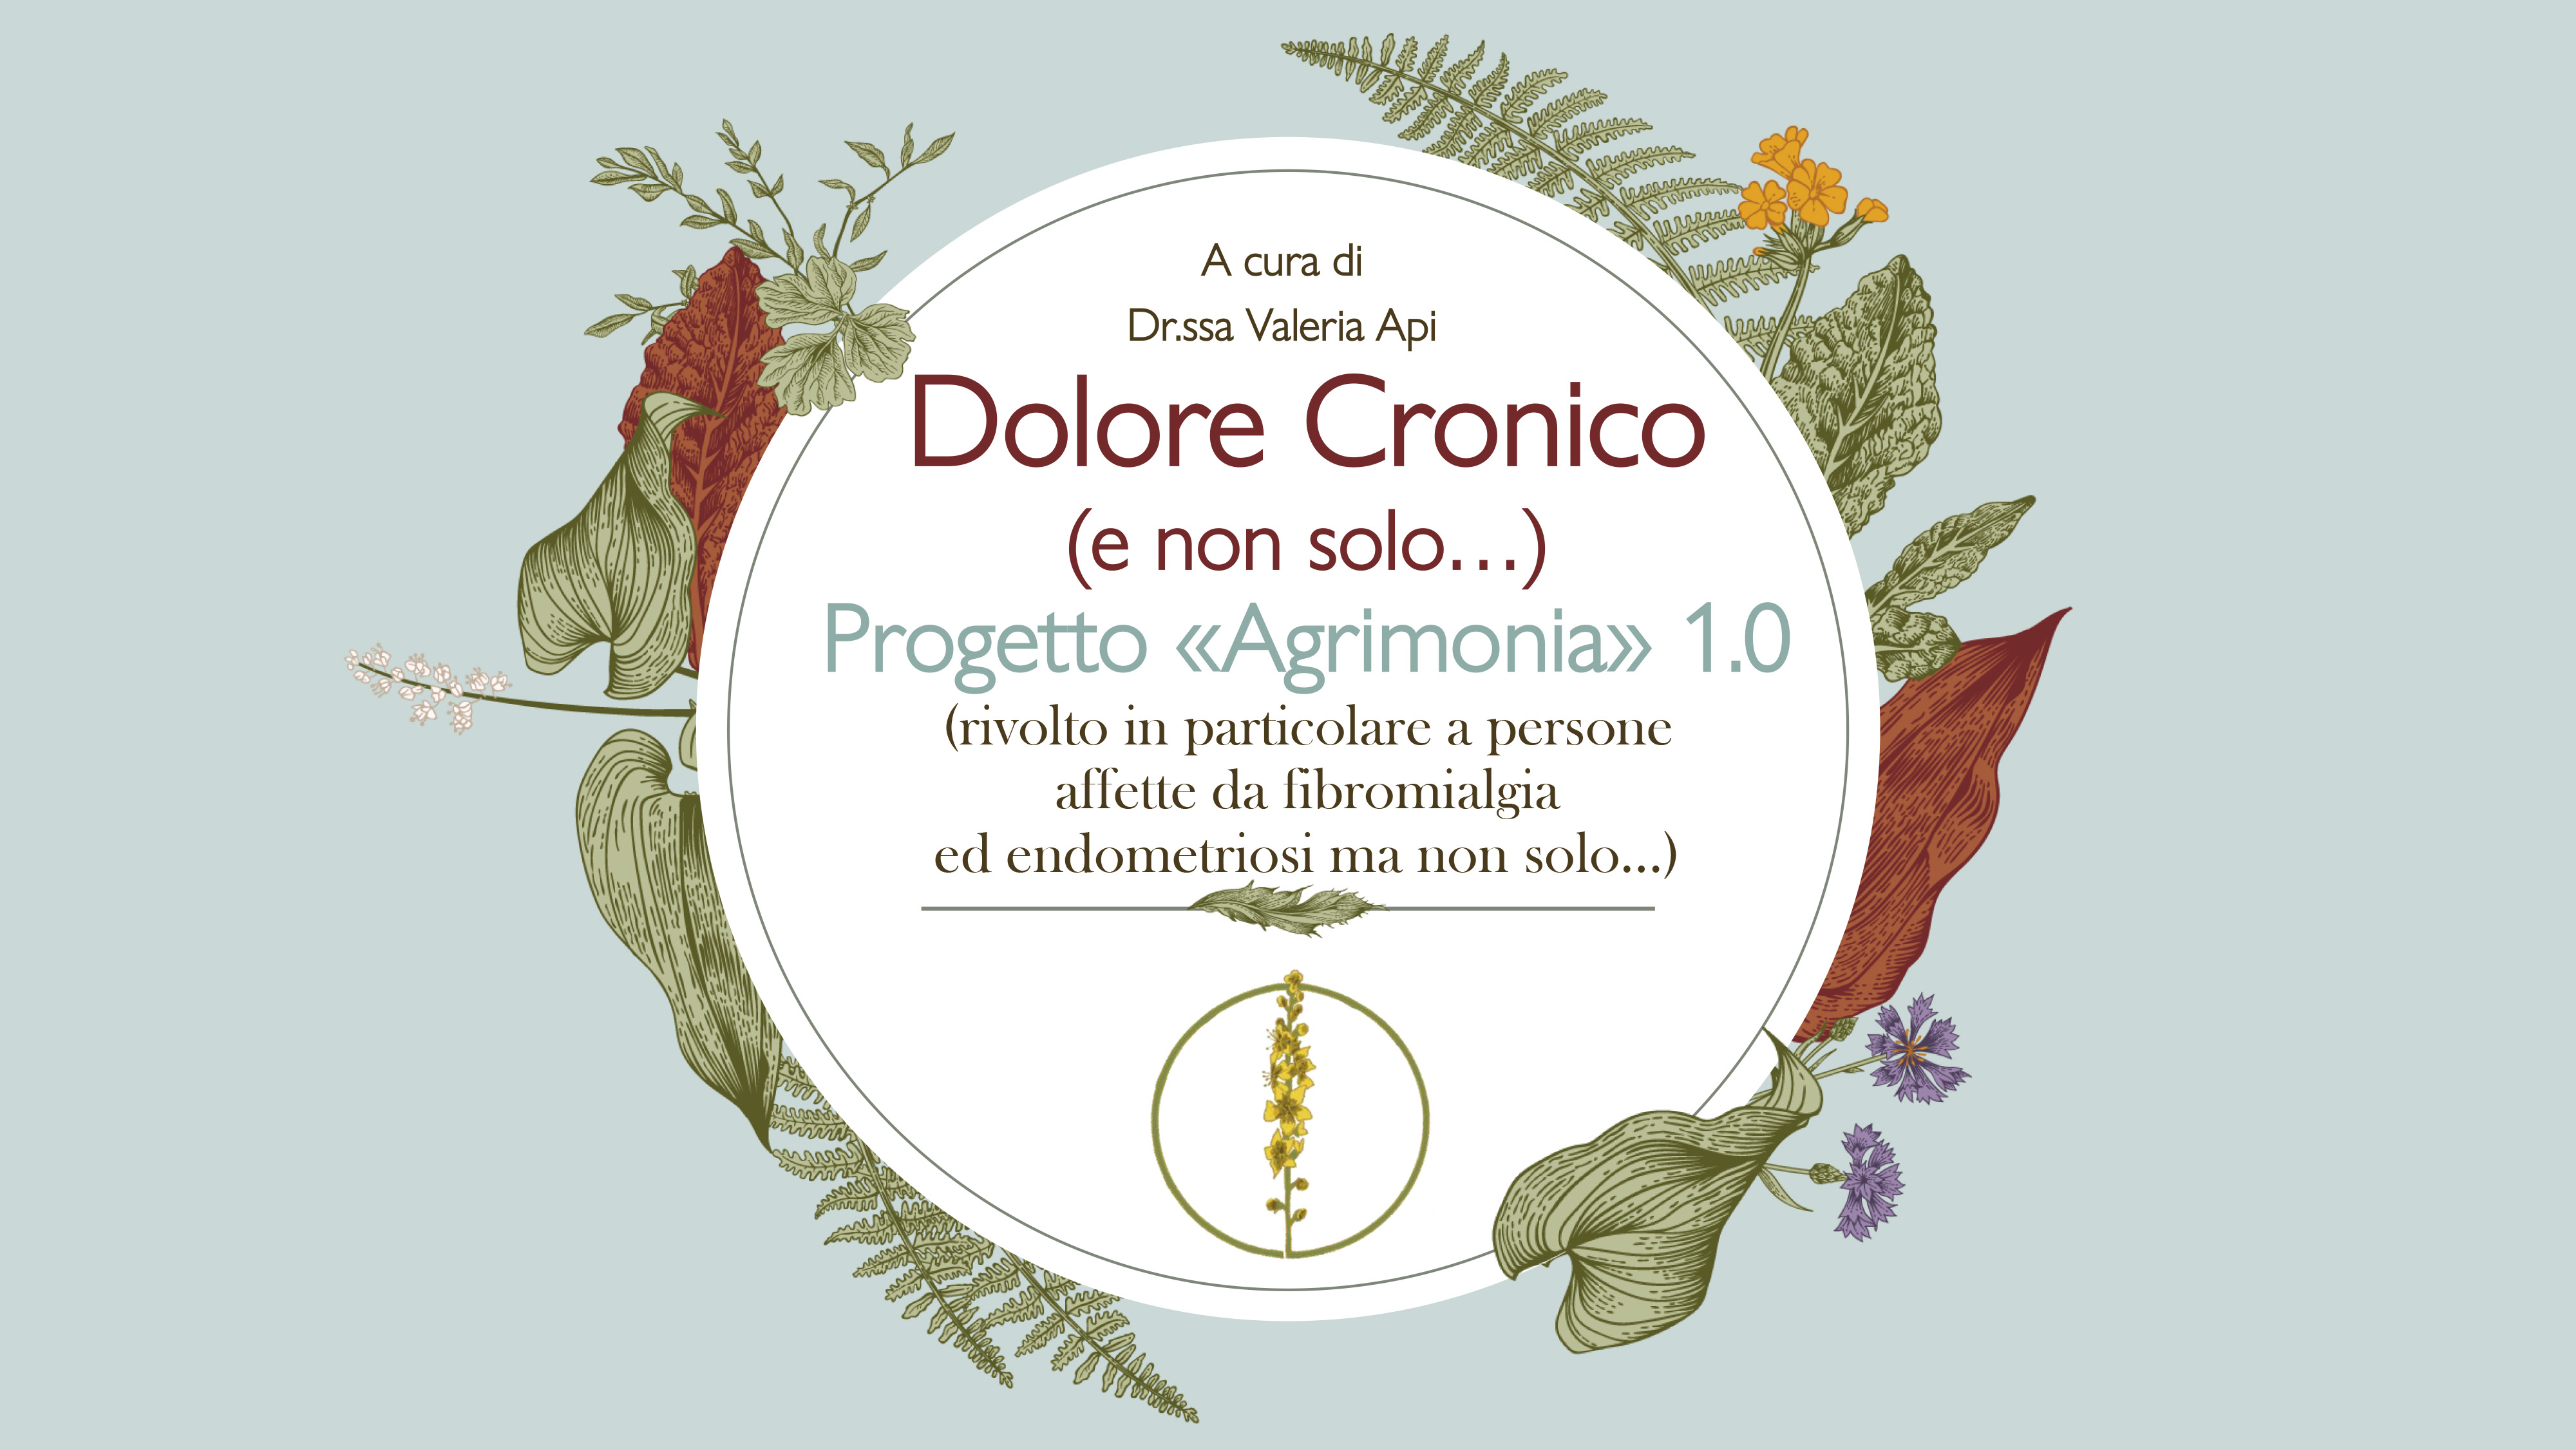 Dolore Cronico Progetto Agrimonia 1.0